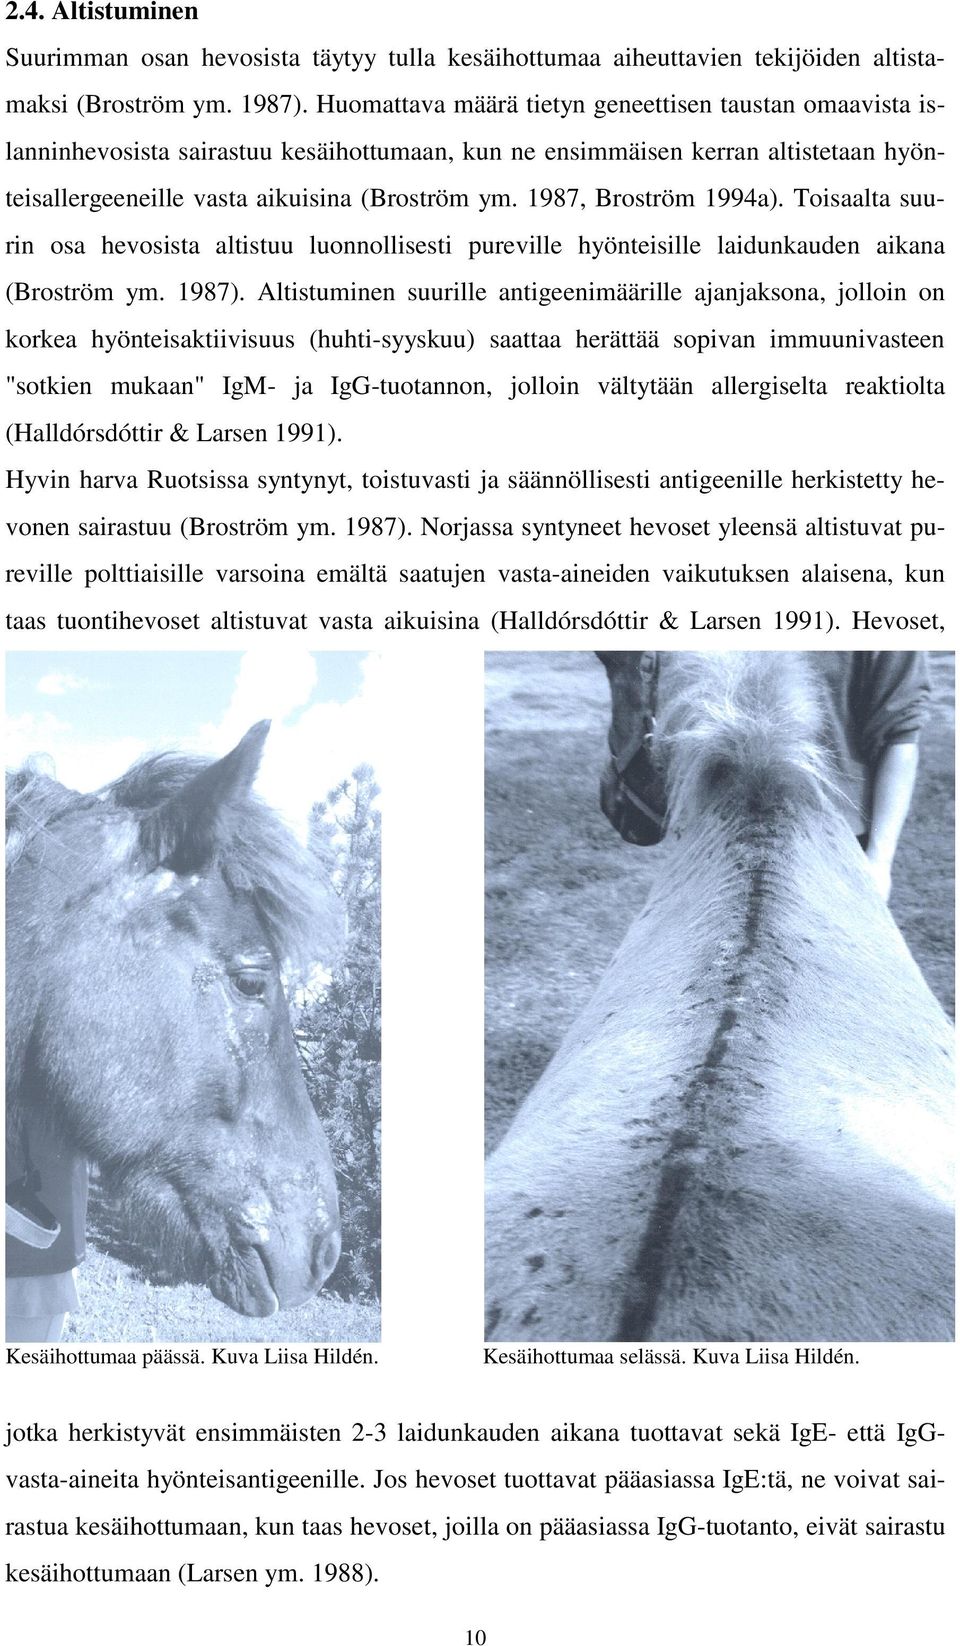 1987, Broström 1994a). Toisaalta suurin osa hevosista altistuu luonnollisesti pureville hyönteisille laidunkauden aikana (Broström ym. 1987).